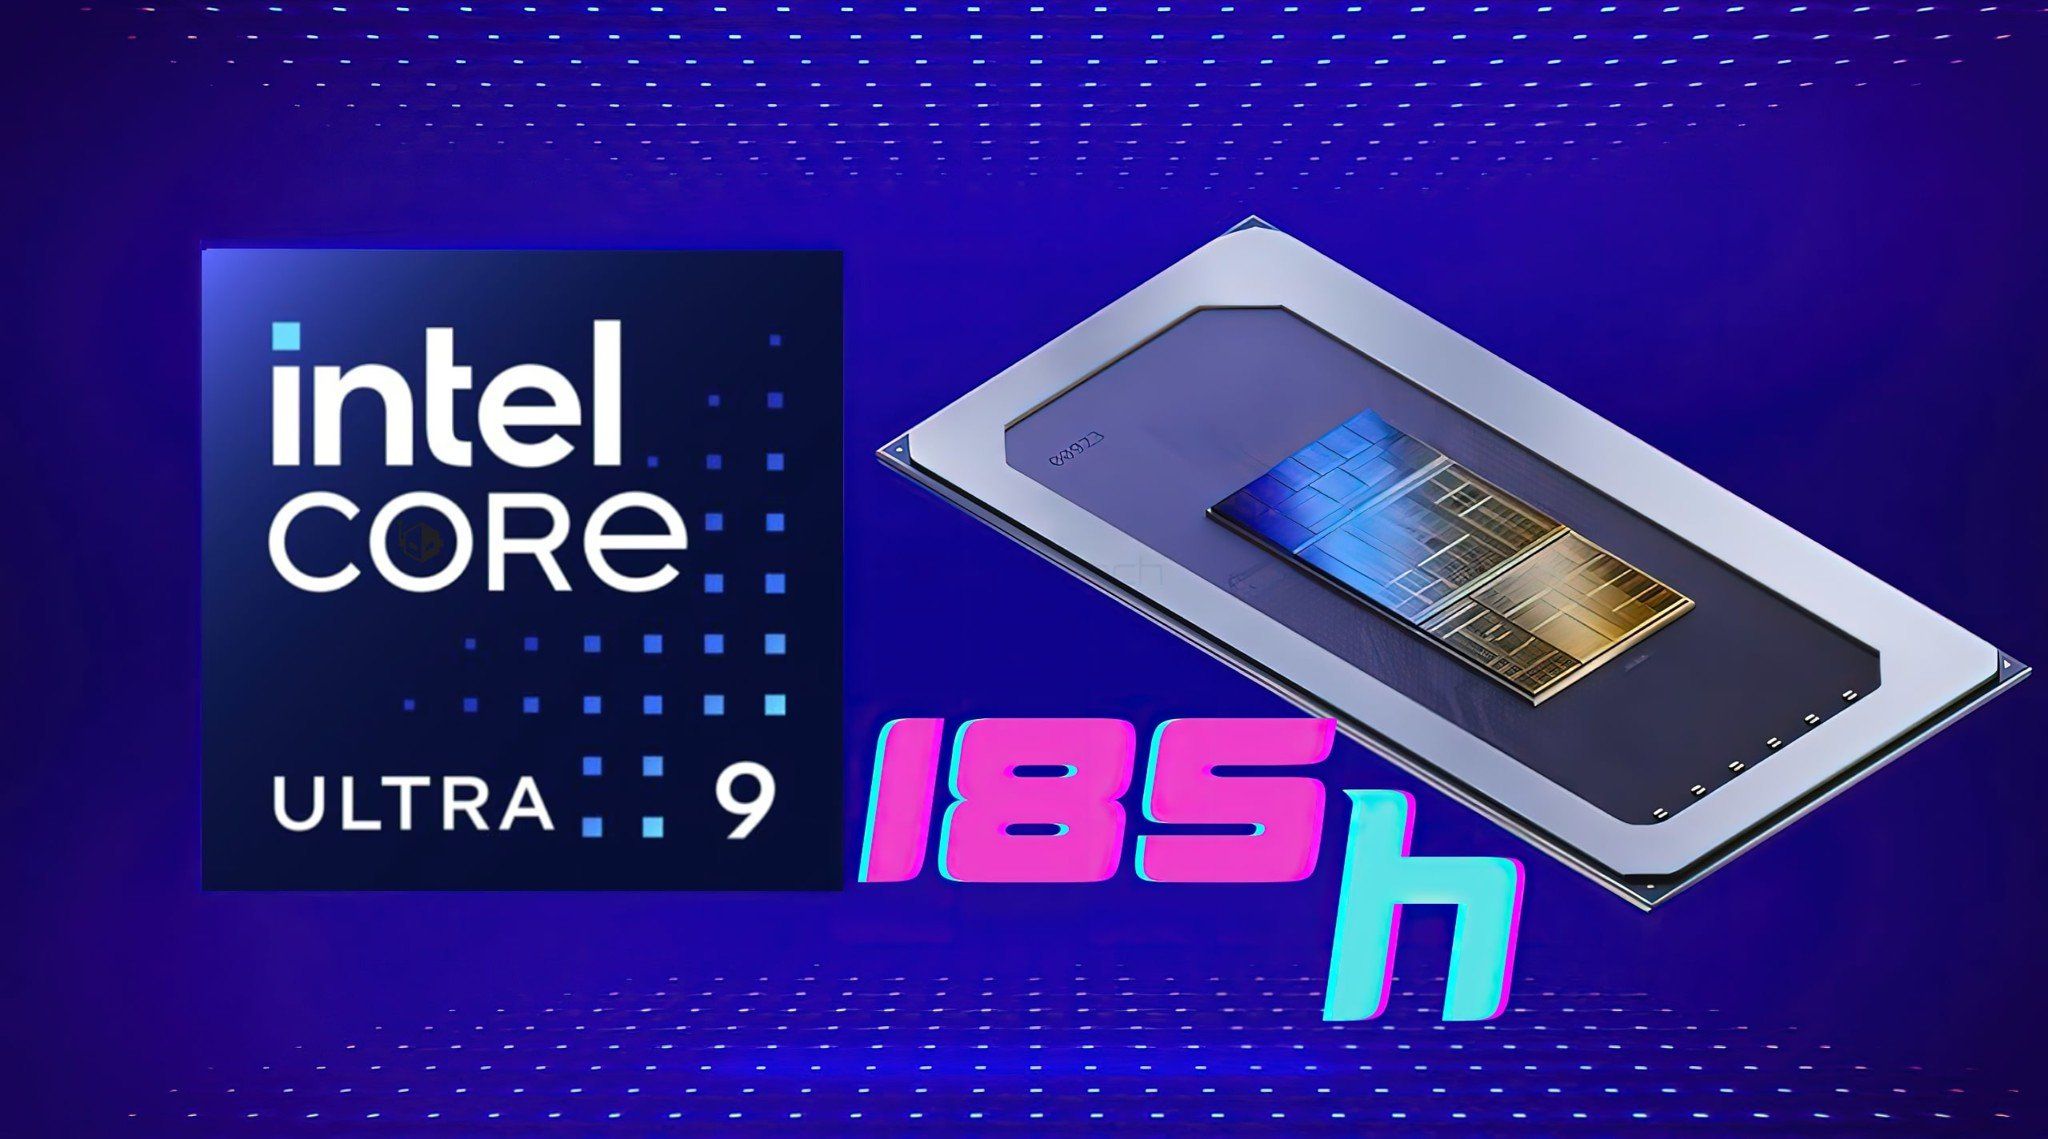 Lộ hiệu năng của Intel Core Ultra 9 185H “Meteor Lake” 5,1GHz ấn tượng